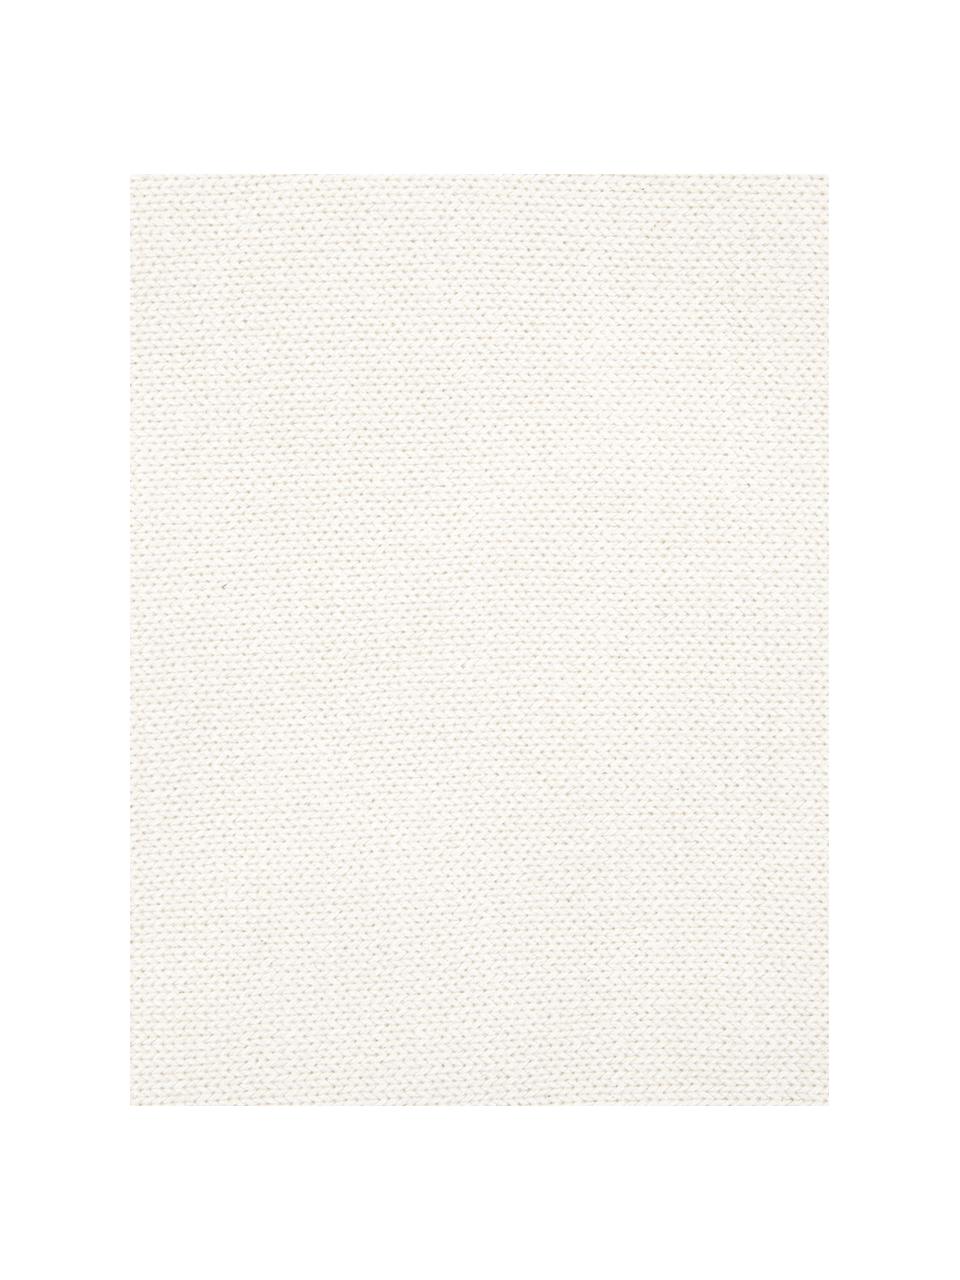 Federa arredo fatta a maglia Elly, 100% cotone, Bianco crema, Larg. 40 x Lung. 40 cm